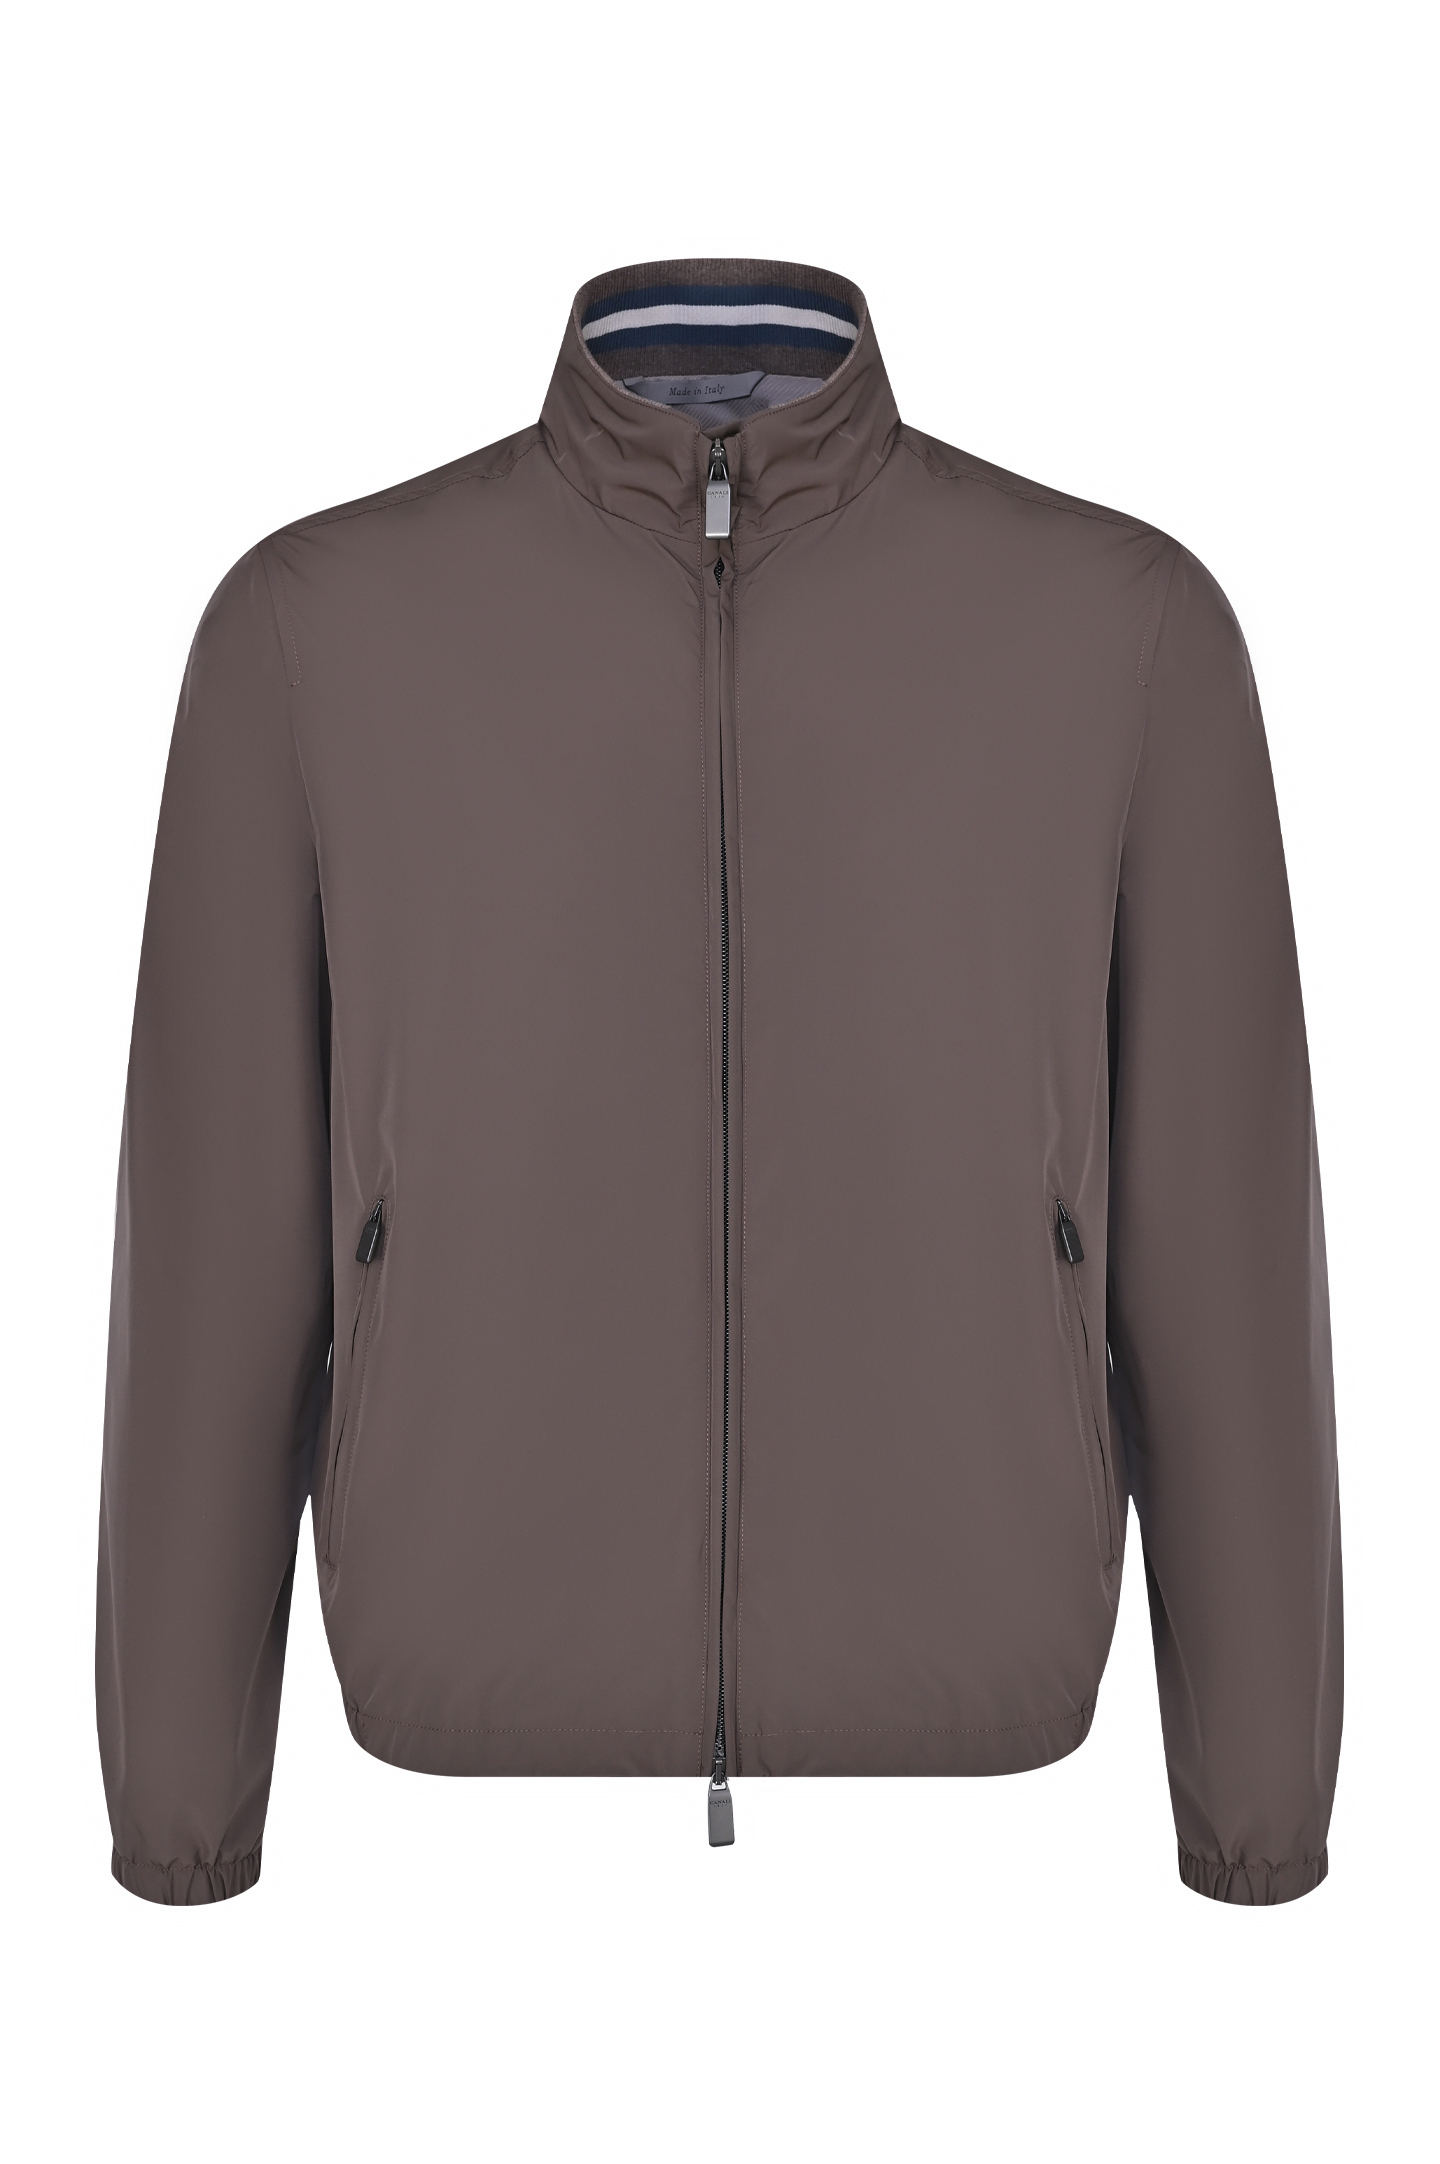 Куртка CANALI SG02321 O40806, цвет: Коричневый, Мужской